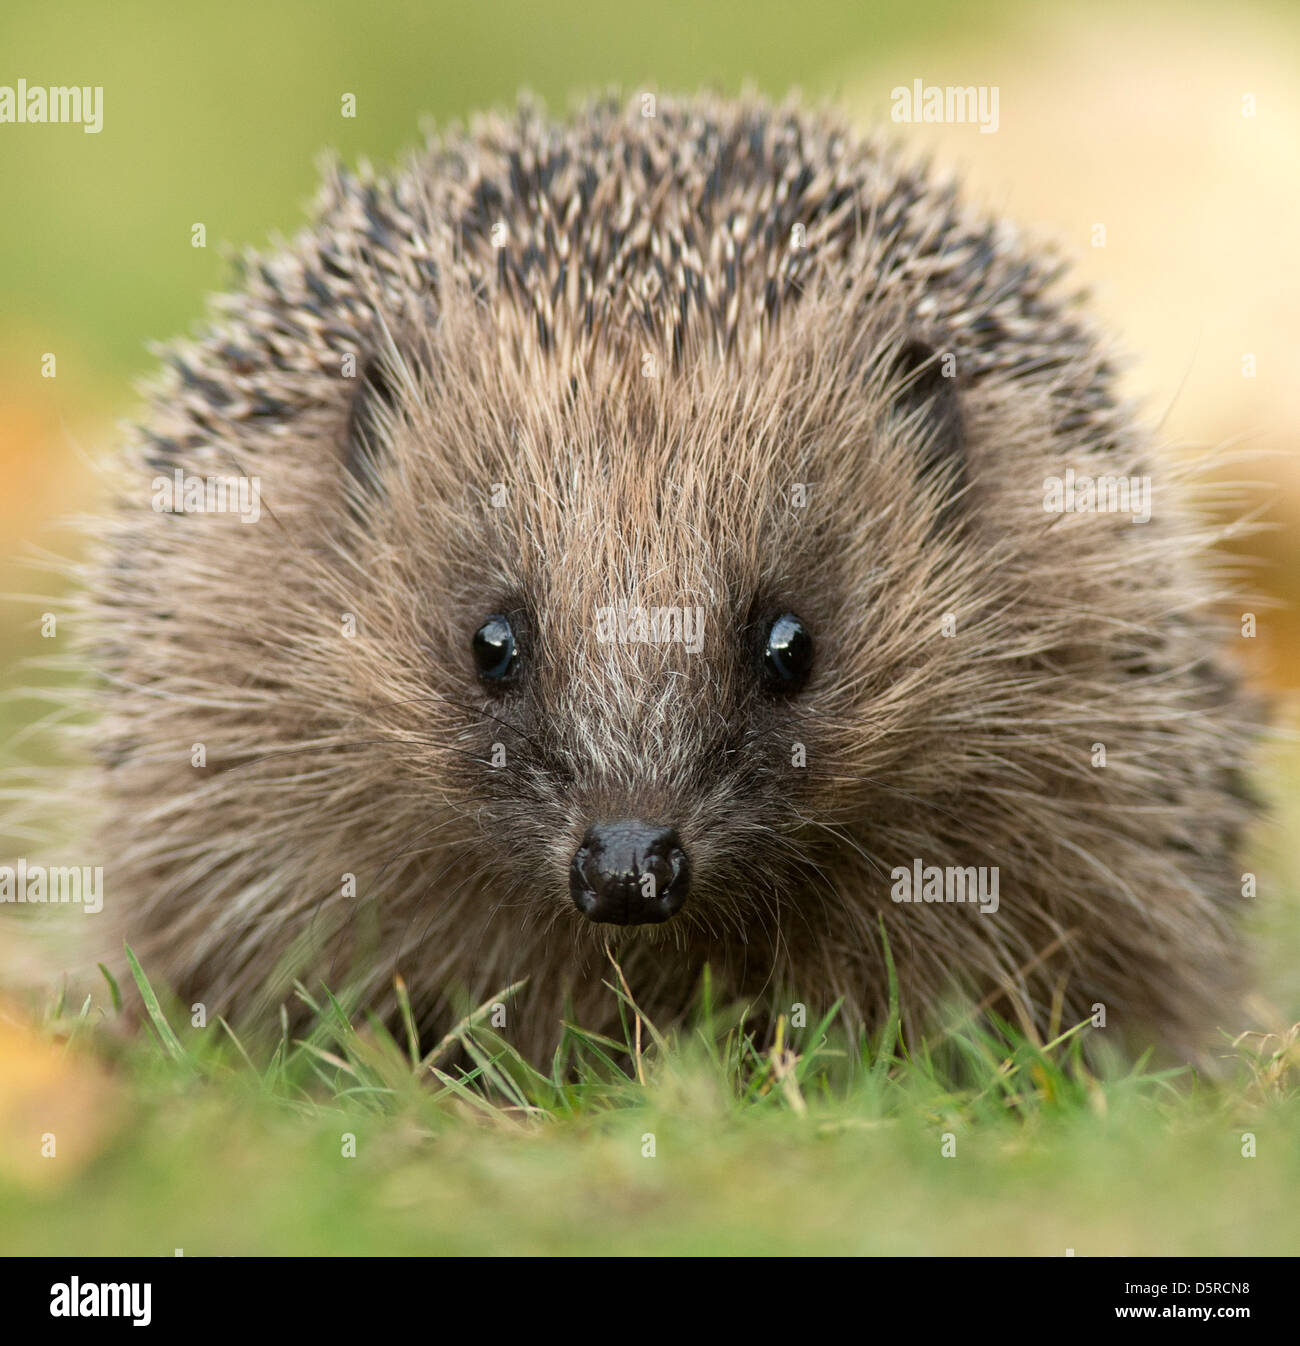 Hedgehog, Erinarceus europaeus,close view, facing forward. sussex. england Stock Photo